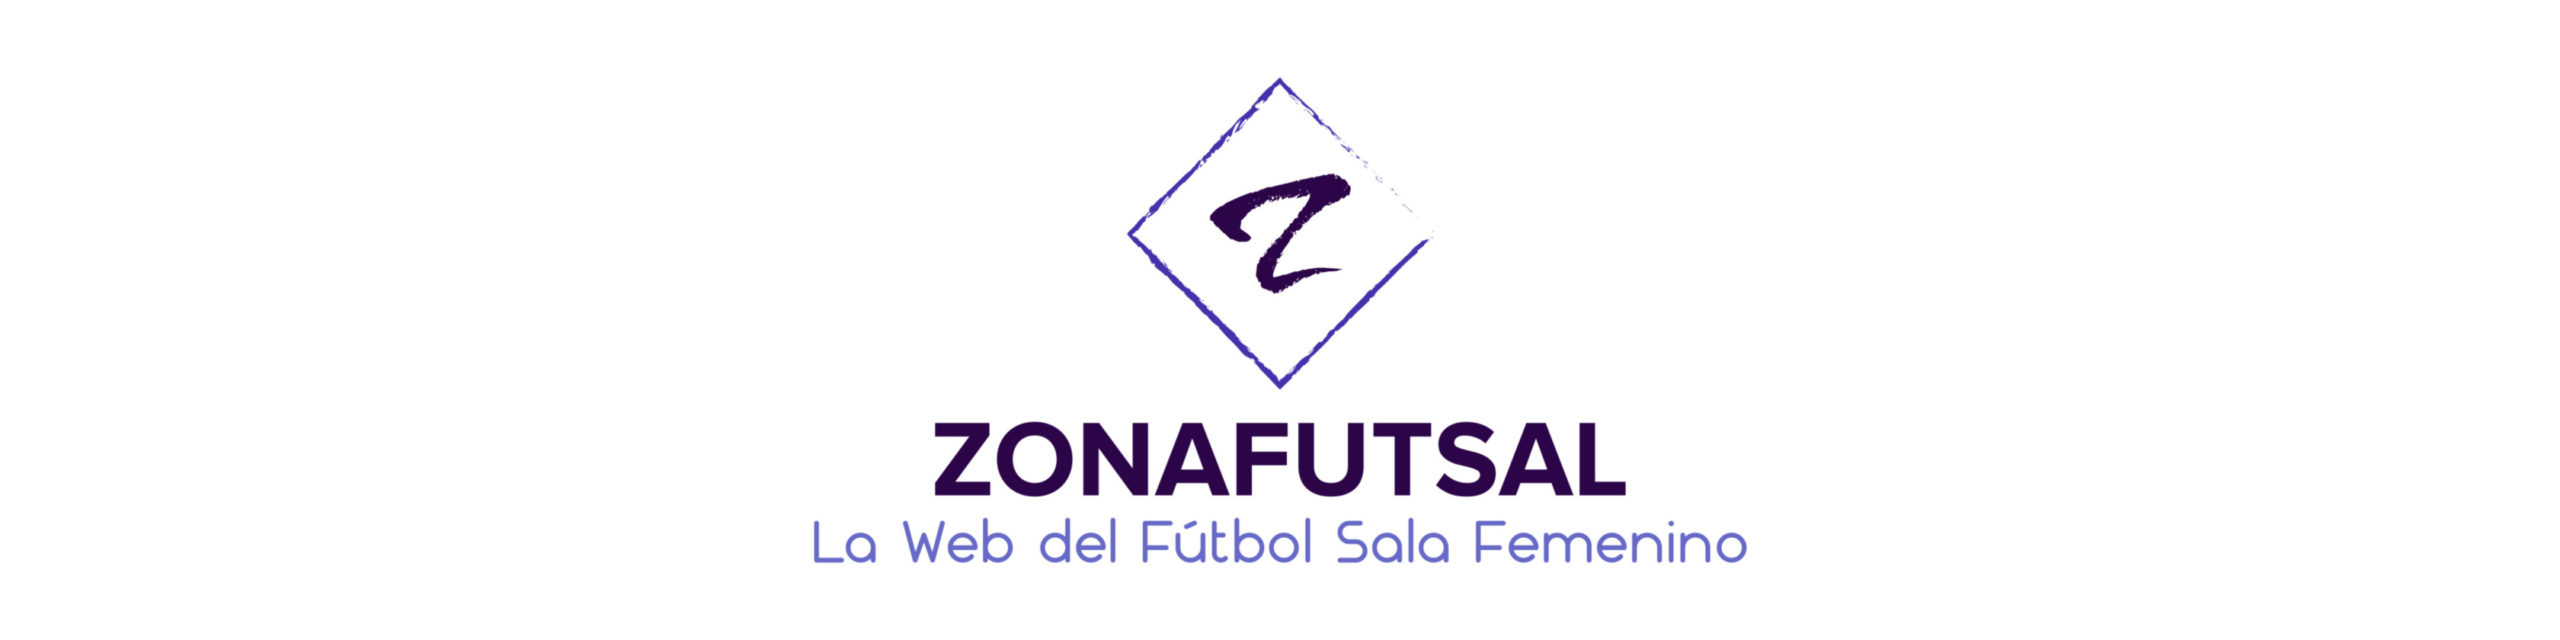 Clasificación de Primera División Fútbol Femenino. Jornada